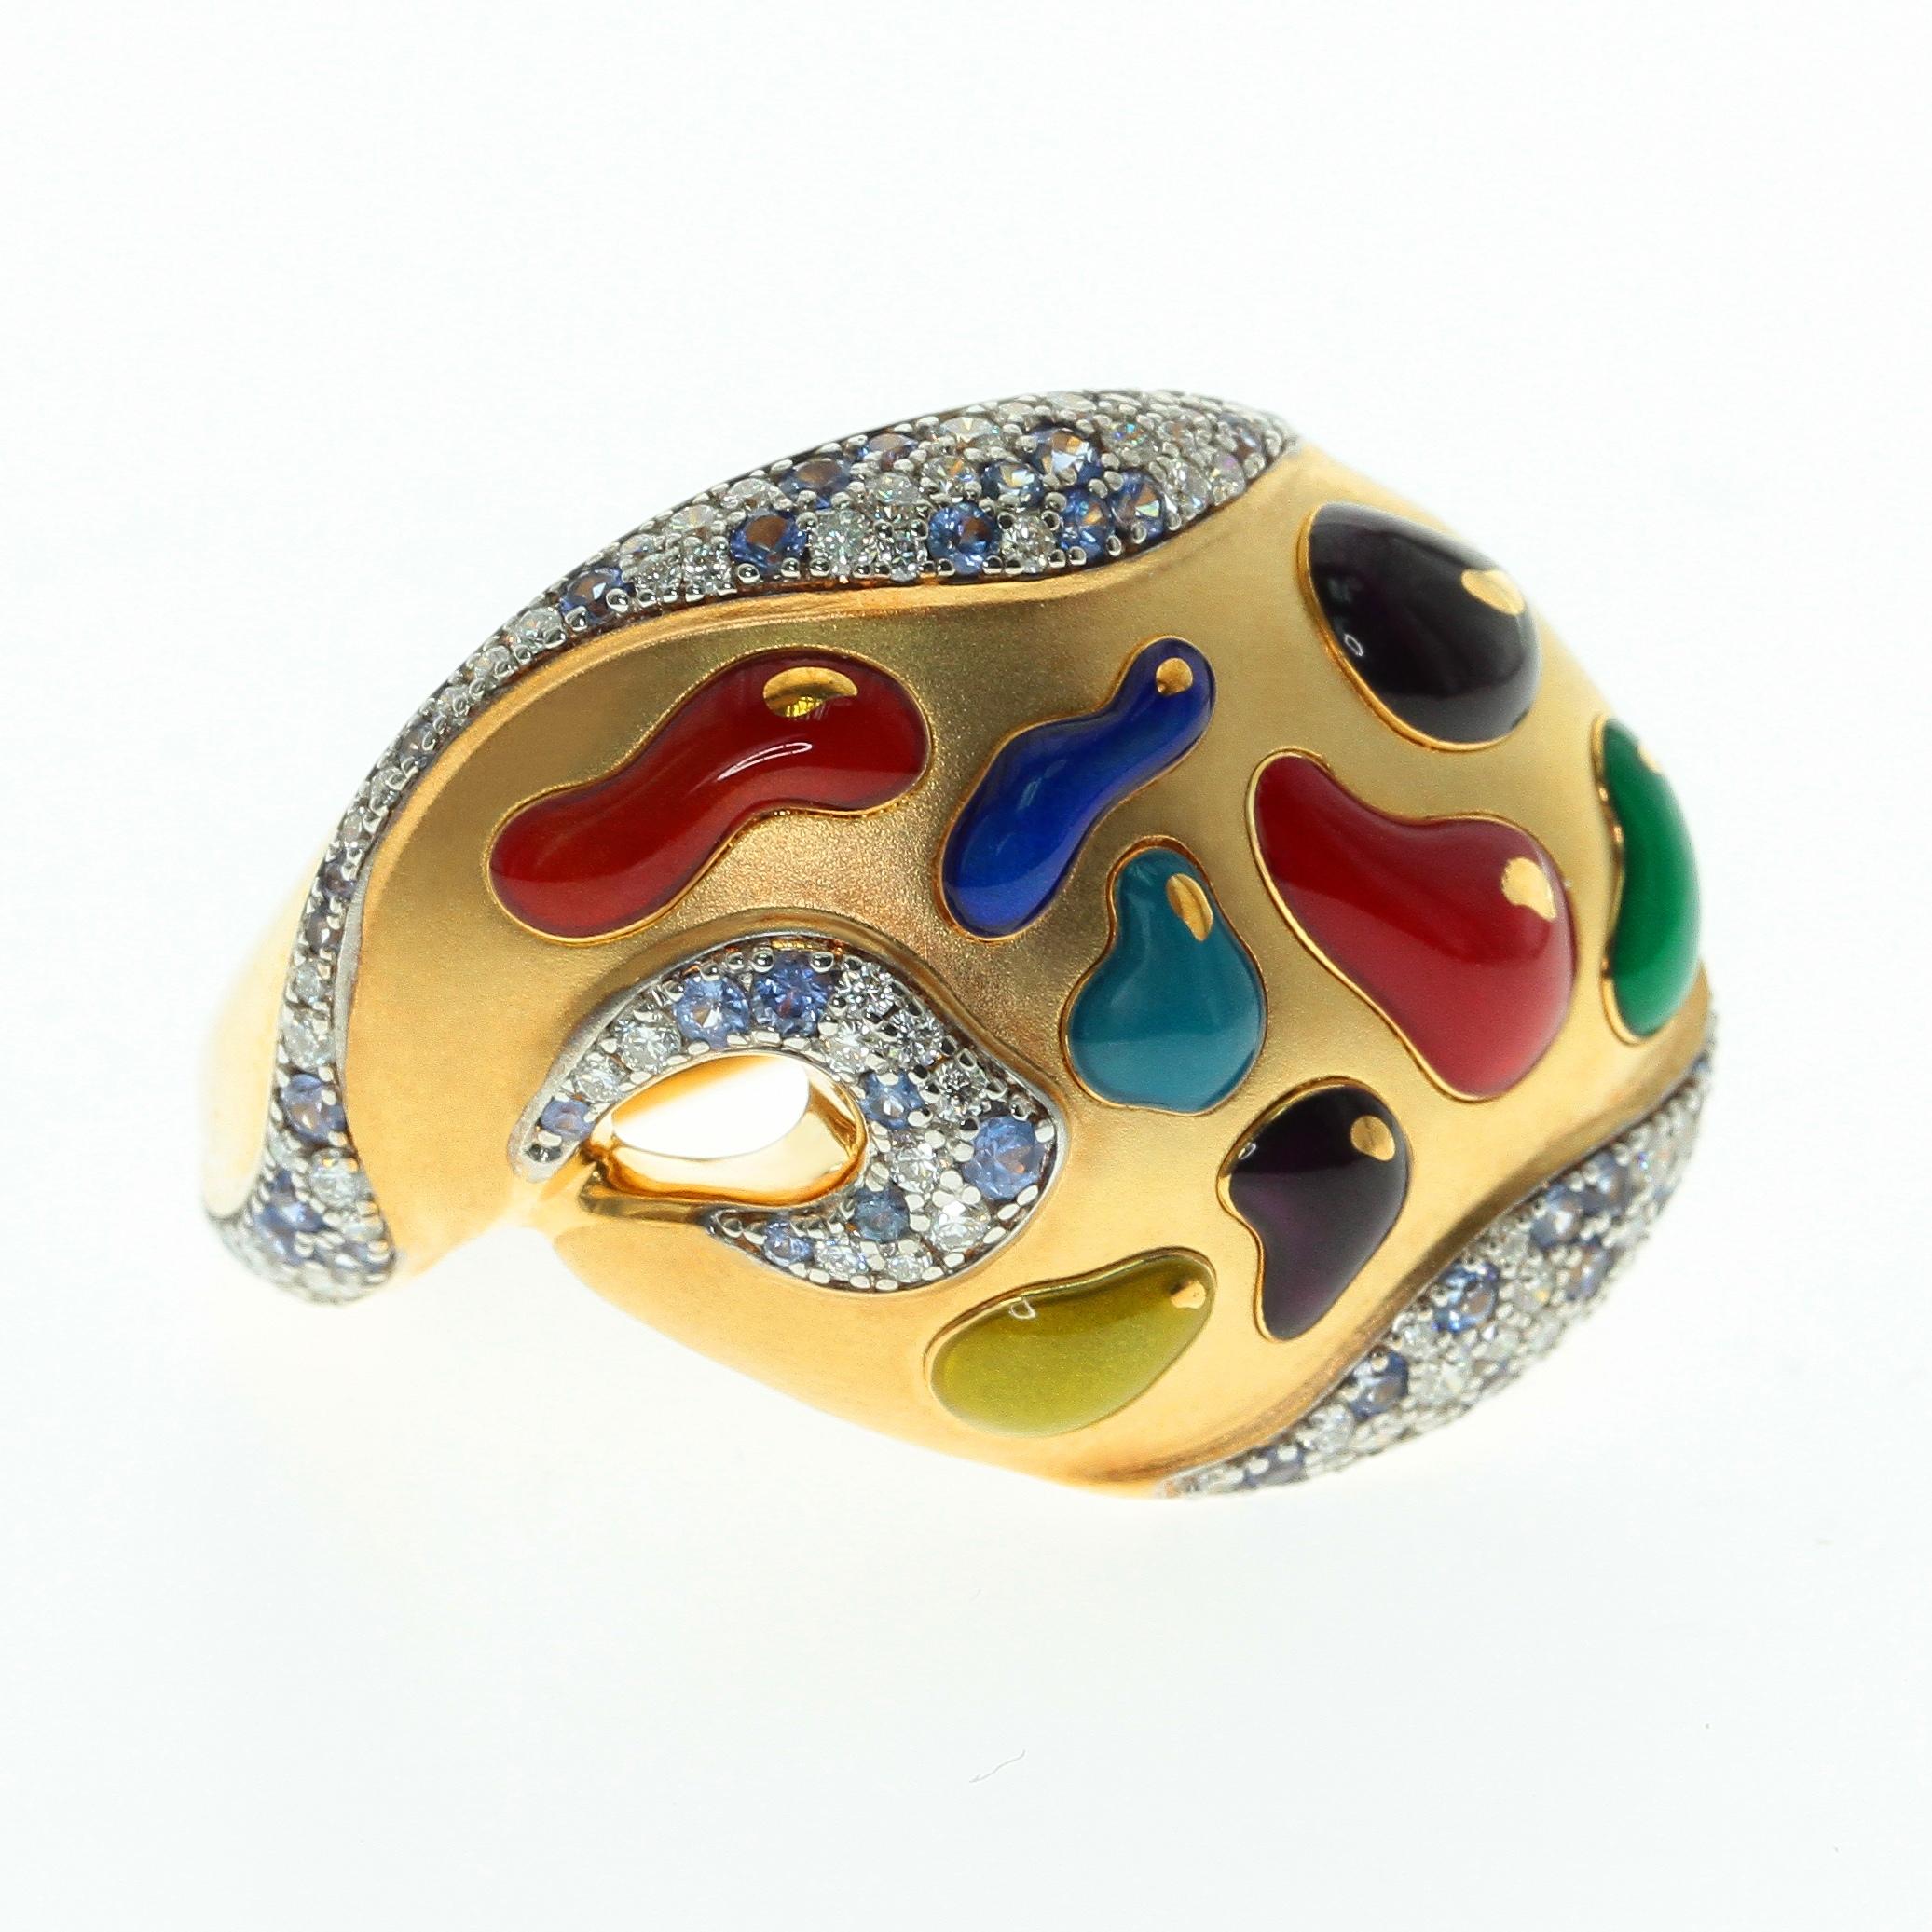 Diamant-Saphir-Emaille 18 Karat Gelbgold Palette Ring
Hochdetailliertes Rückenteil. Das beste Geschenk aller Zeiten für eine Artistik-Person. 
Begleitet von den Ohrringen LU116414785073 und der Brosche LU116414785033

Größe 29,2x22x25,4 mm
Gewicht